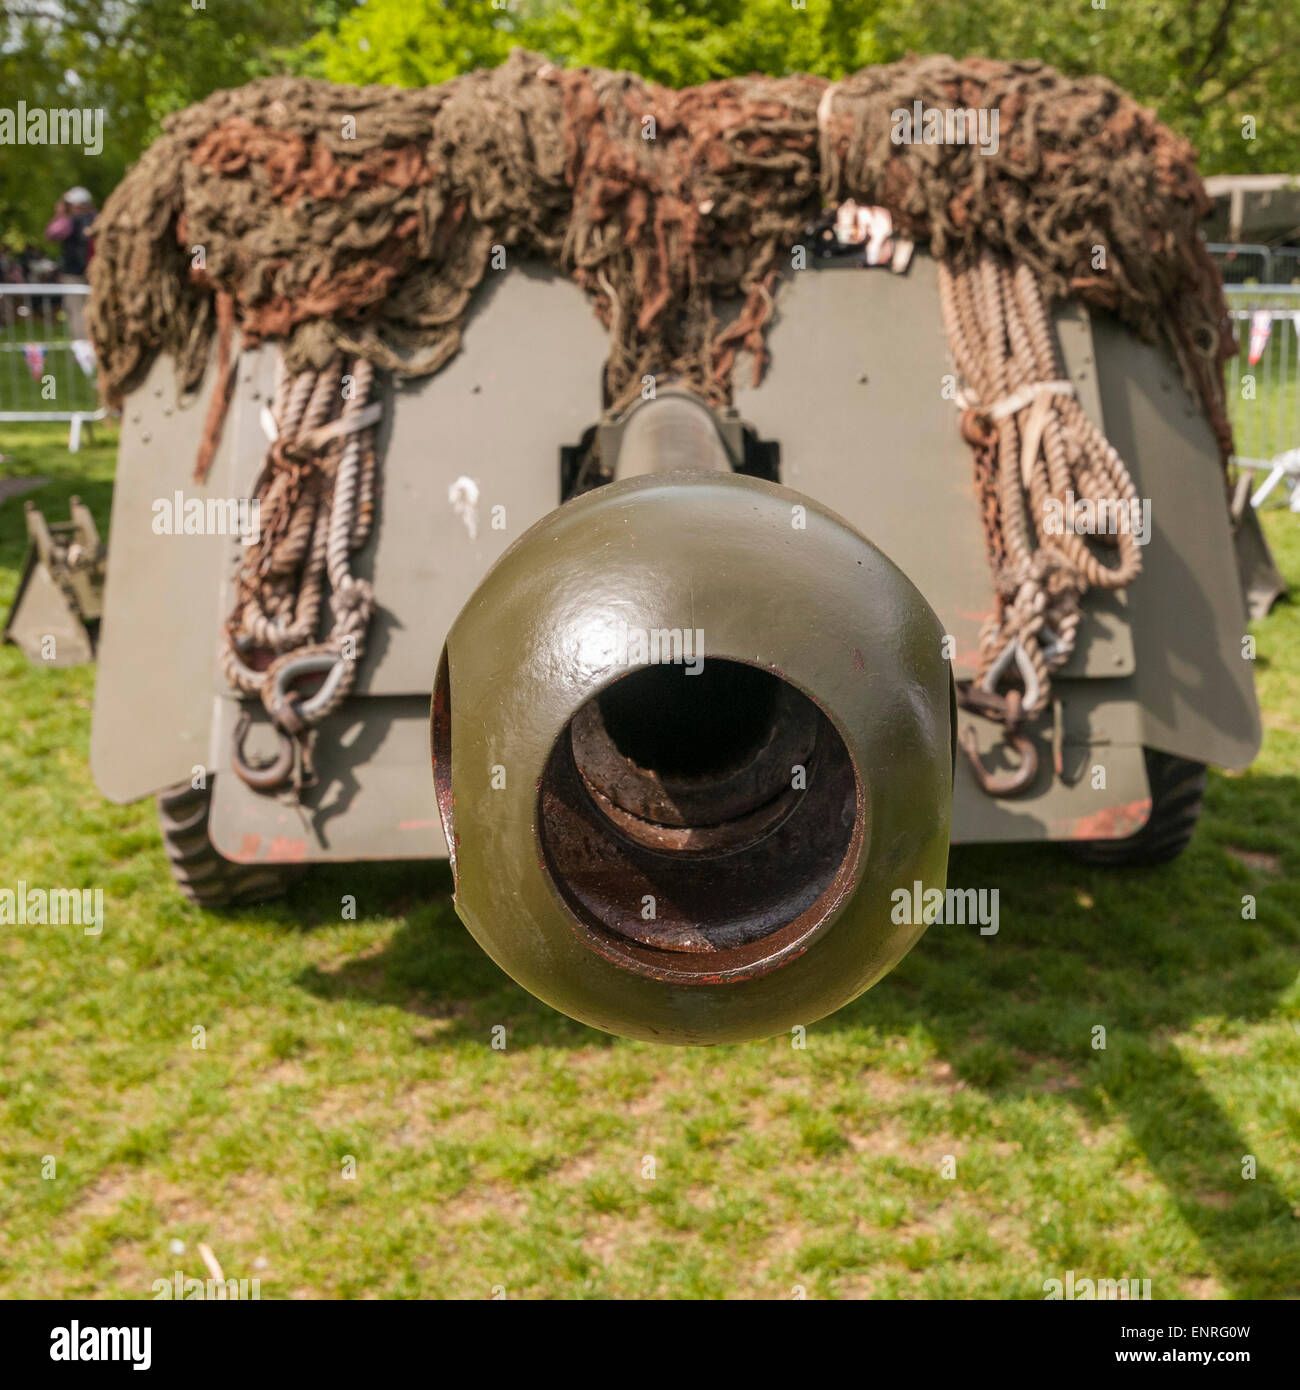 Londres, Royaume-Uni. 10 mai 2015. Un canon antichar de 17 pounder est l'un des produits présentés au public dans une exposition spéciale de matériel de guerre dans le parc de St James, qui faisait partie de la capitale le jour de la victoire en 70e anniversaire. Crédit : Stephen Chung / Alamy Live News Banque D'Images